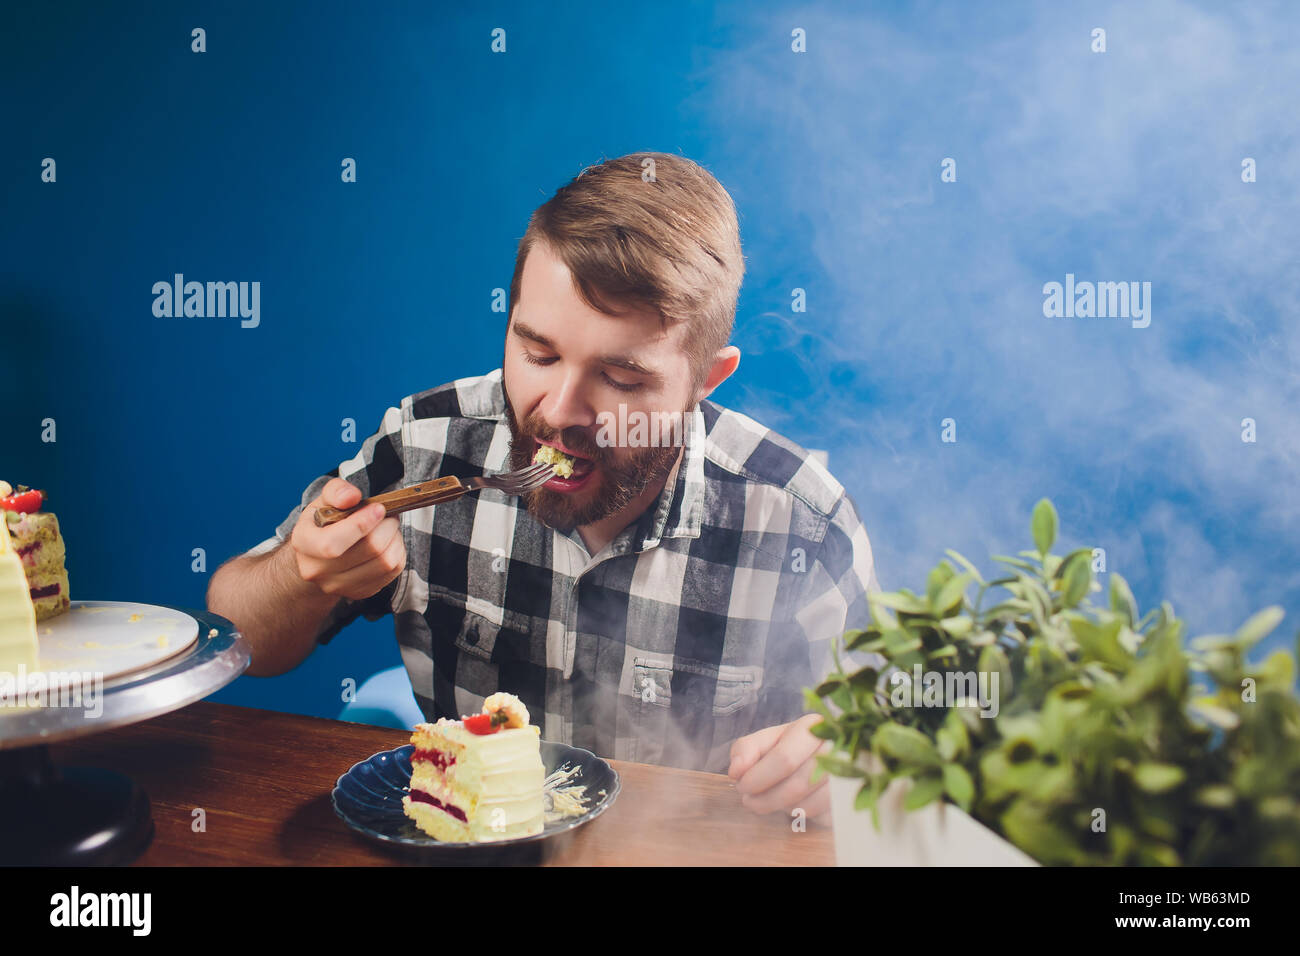 La gente, el ocio, el concepto de alimentos - apuesto hombre sonriente con  la camisa blanca sentado en una mesa comiendo su desayuno. El desayuno por  la mañana - hombre barbado comiendo